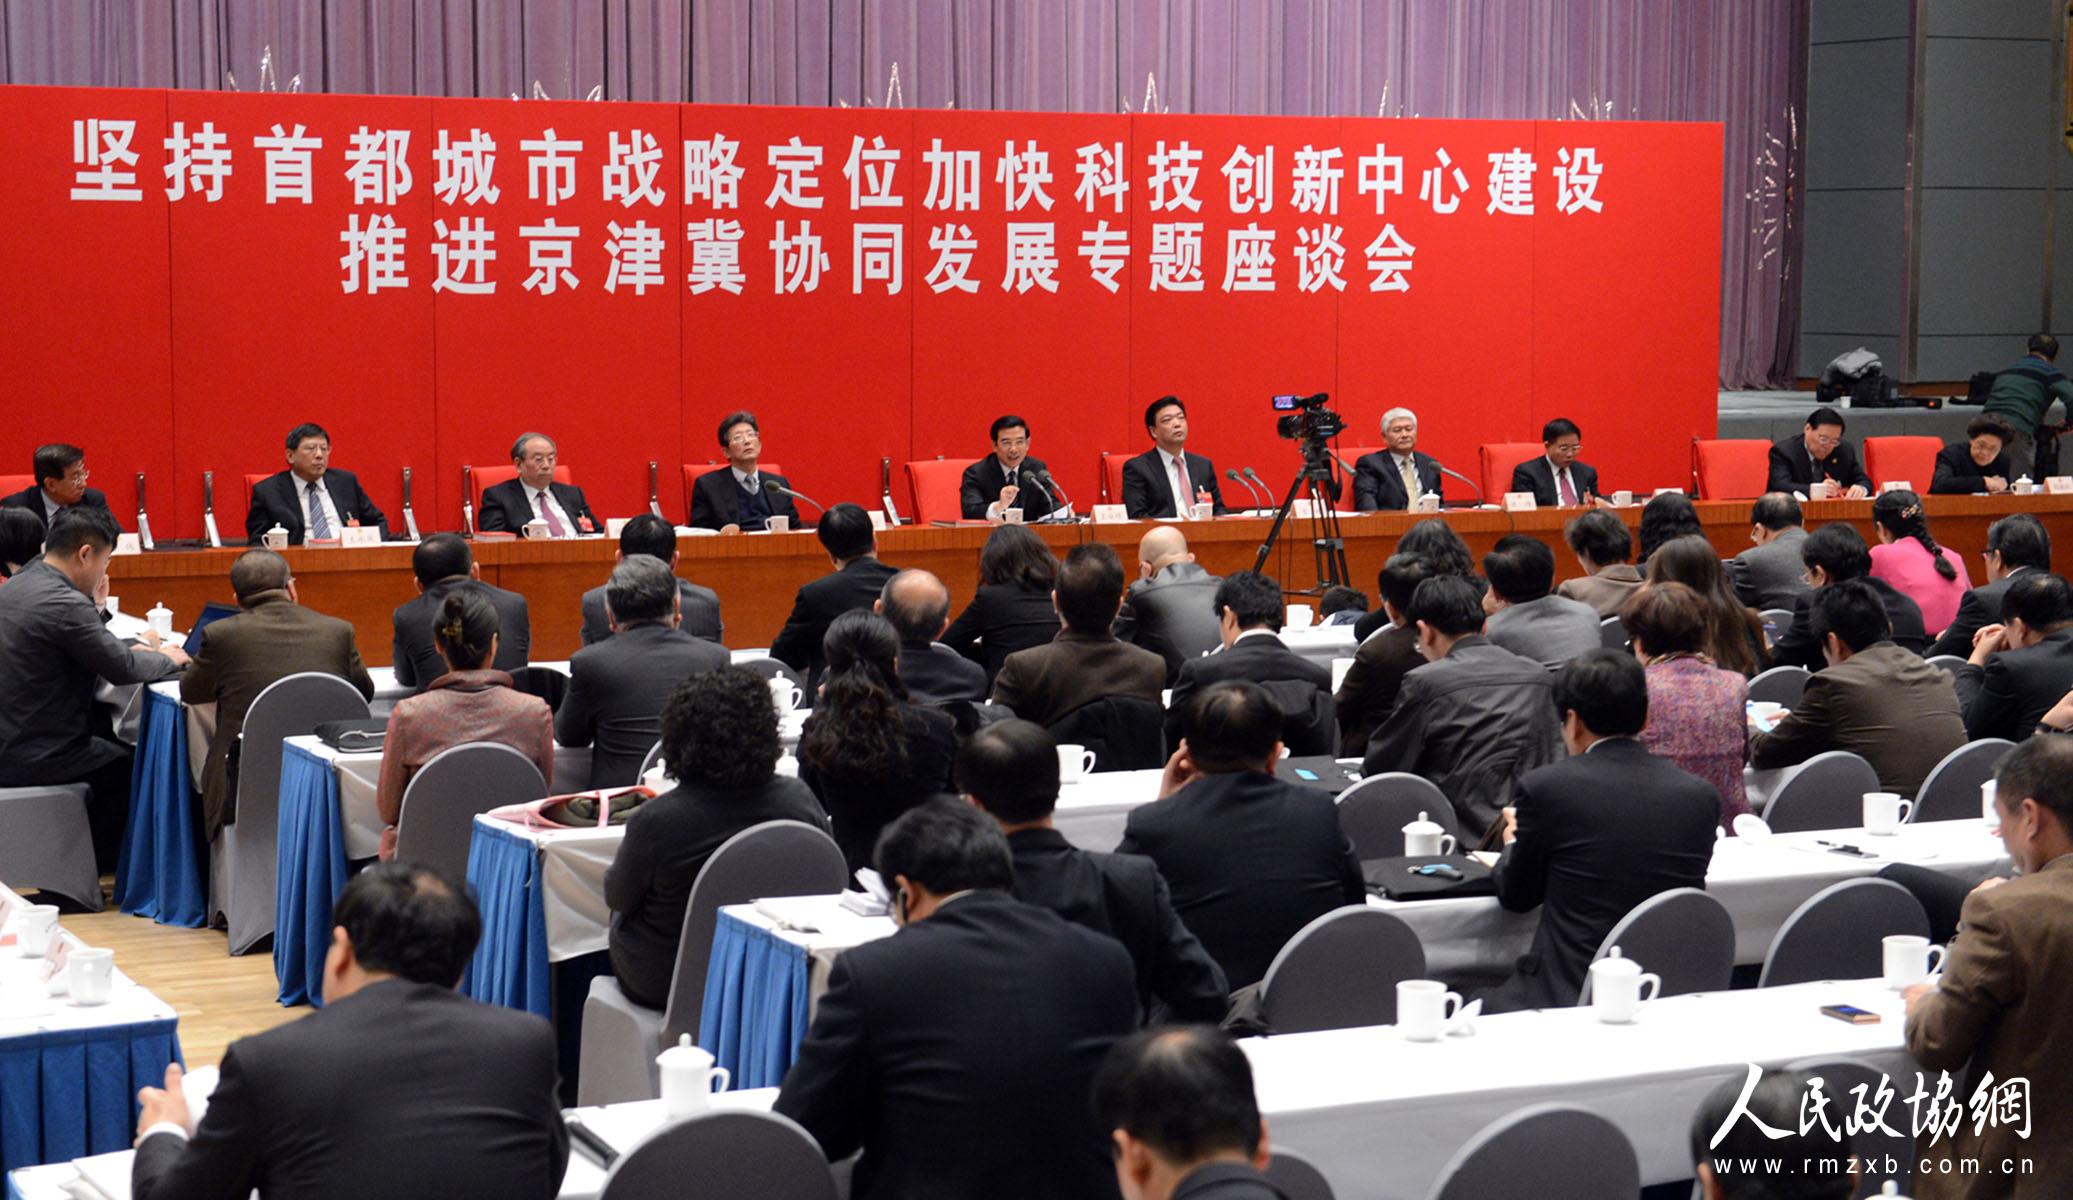 
											
											
												在推进京津冀协同发展座谈会上委员们争先发言
											